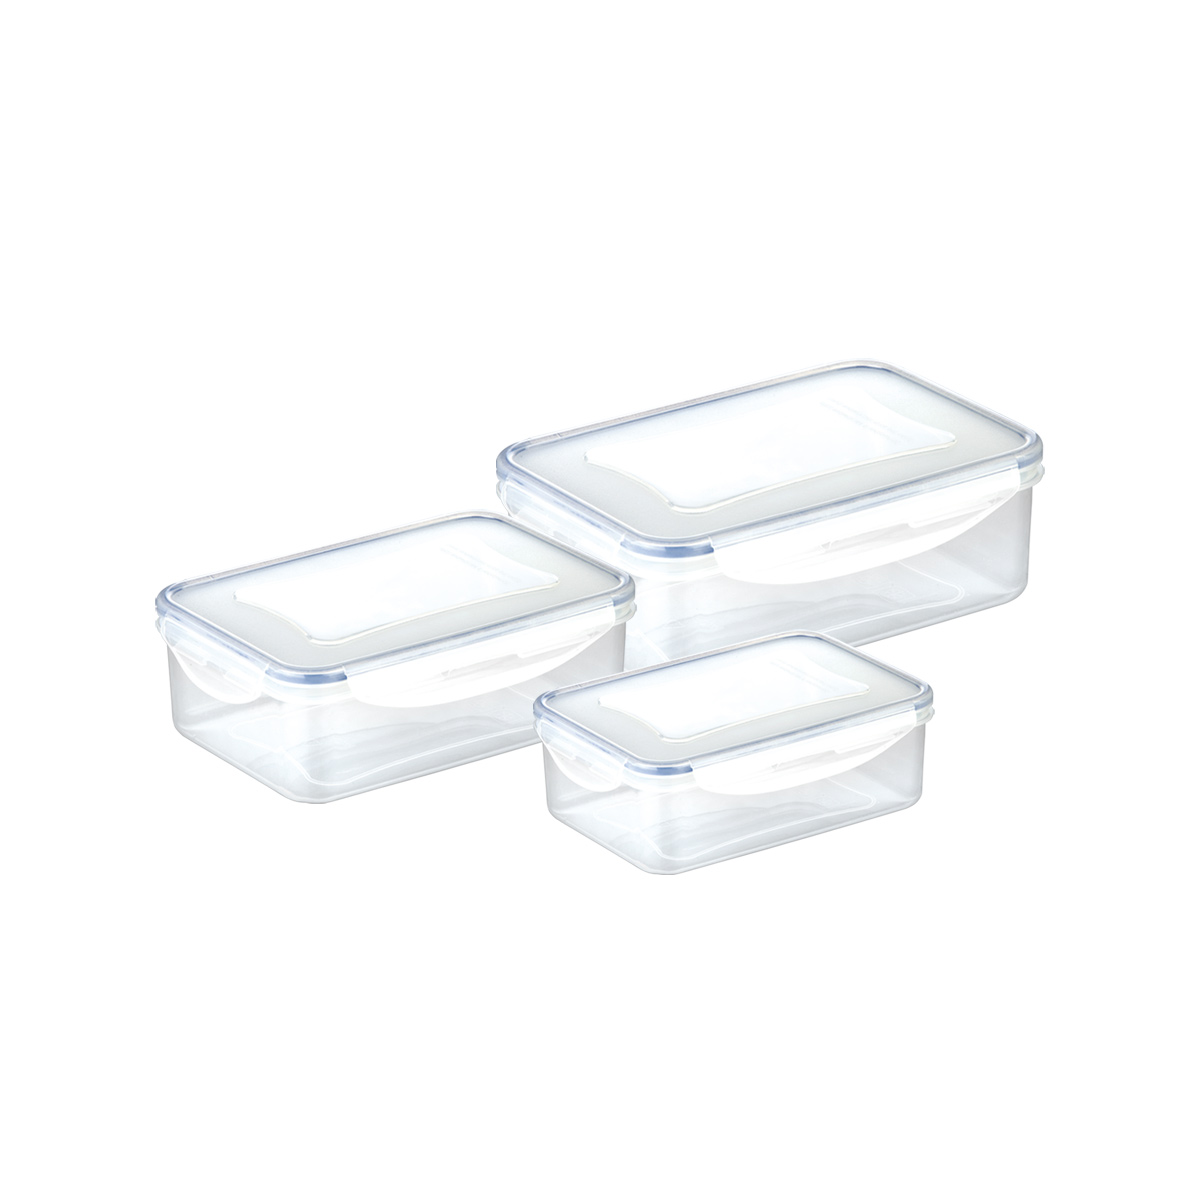 Caixa rectangular FRESHBOX 3 pcs, 0.2, 0.5, 1.0 l